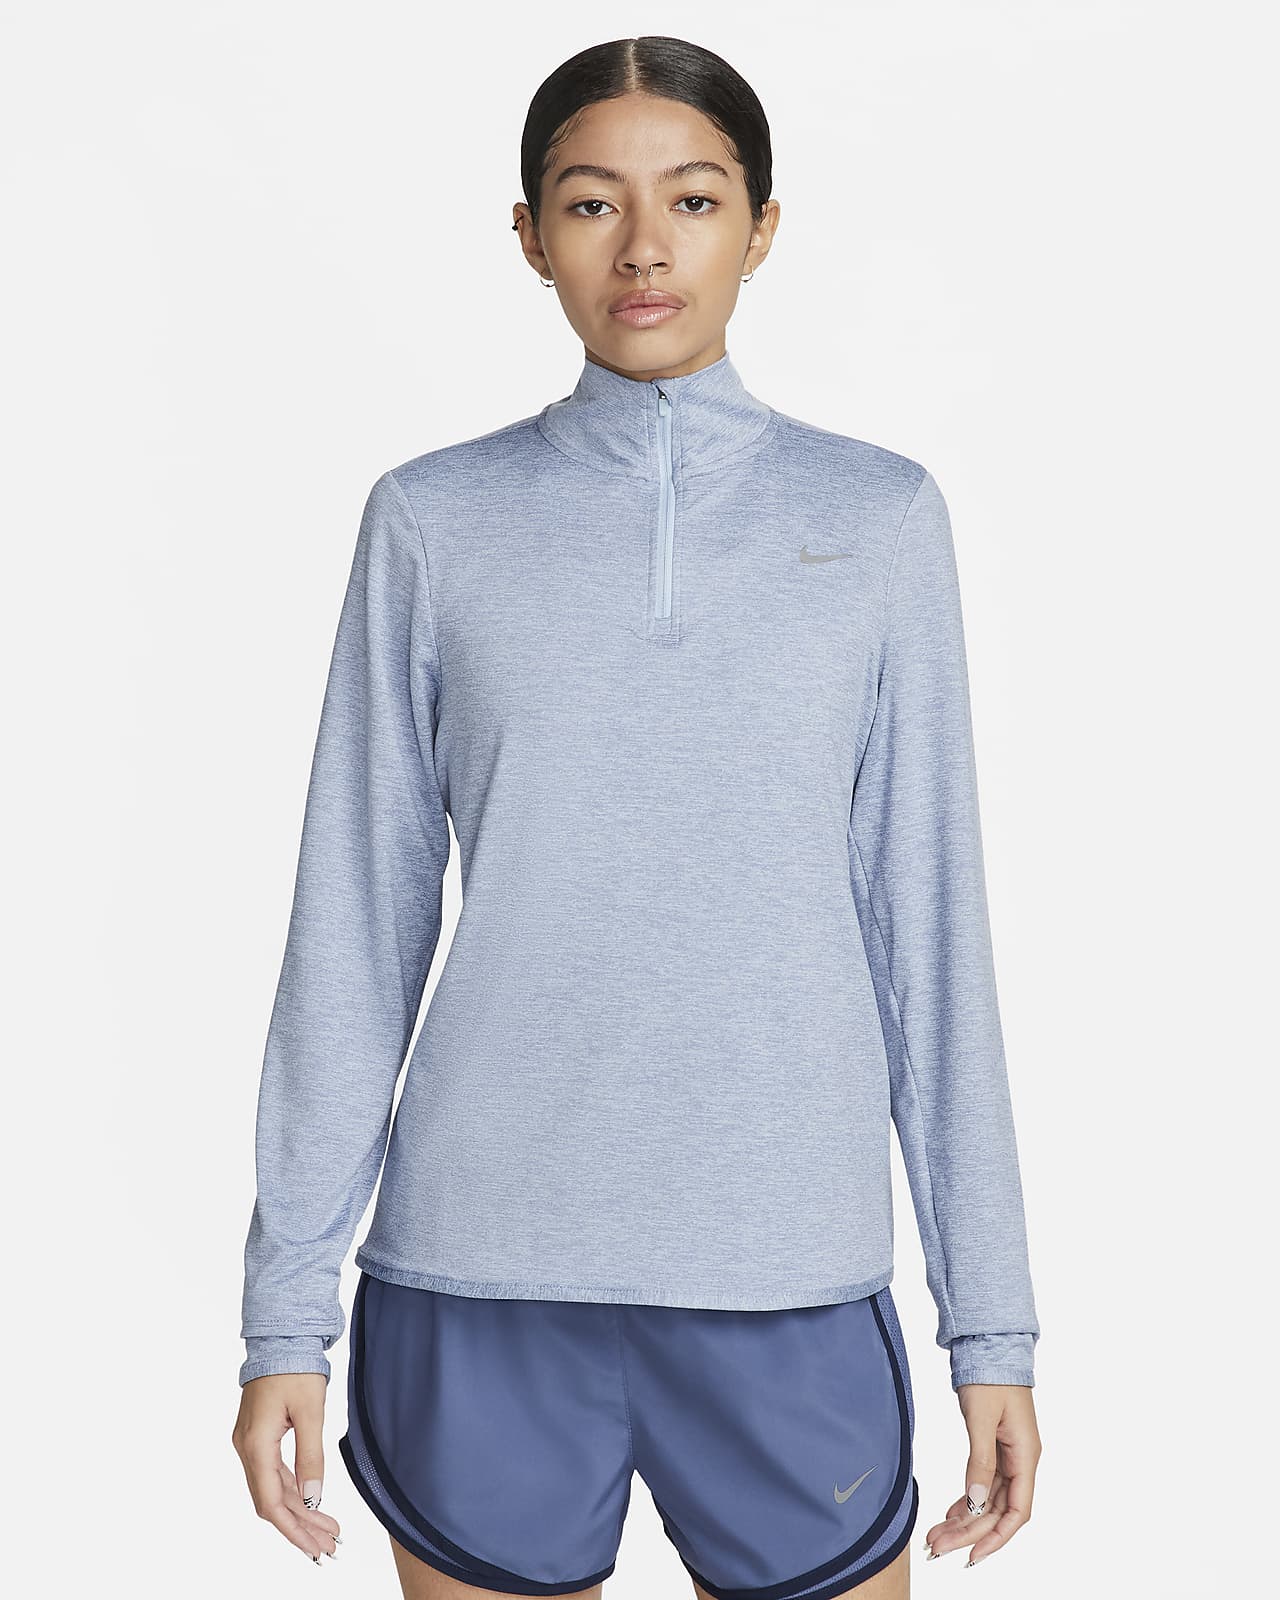 Γυναικεία μπλούζα για τρέξιμο με προστασία UV και φερμουάρ στο 1/4 του μήκους Nike Swift